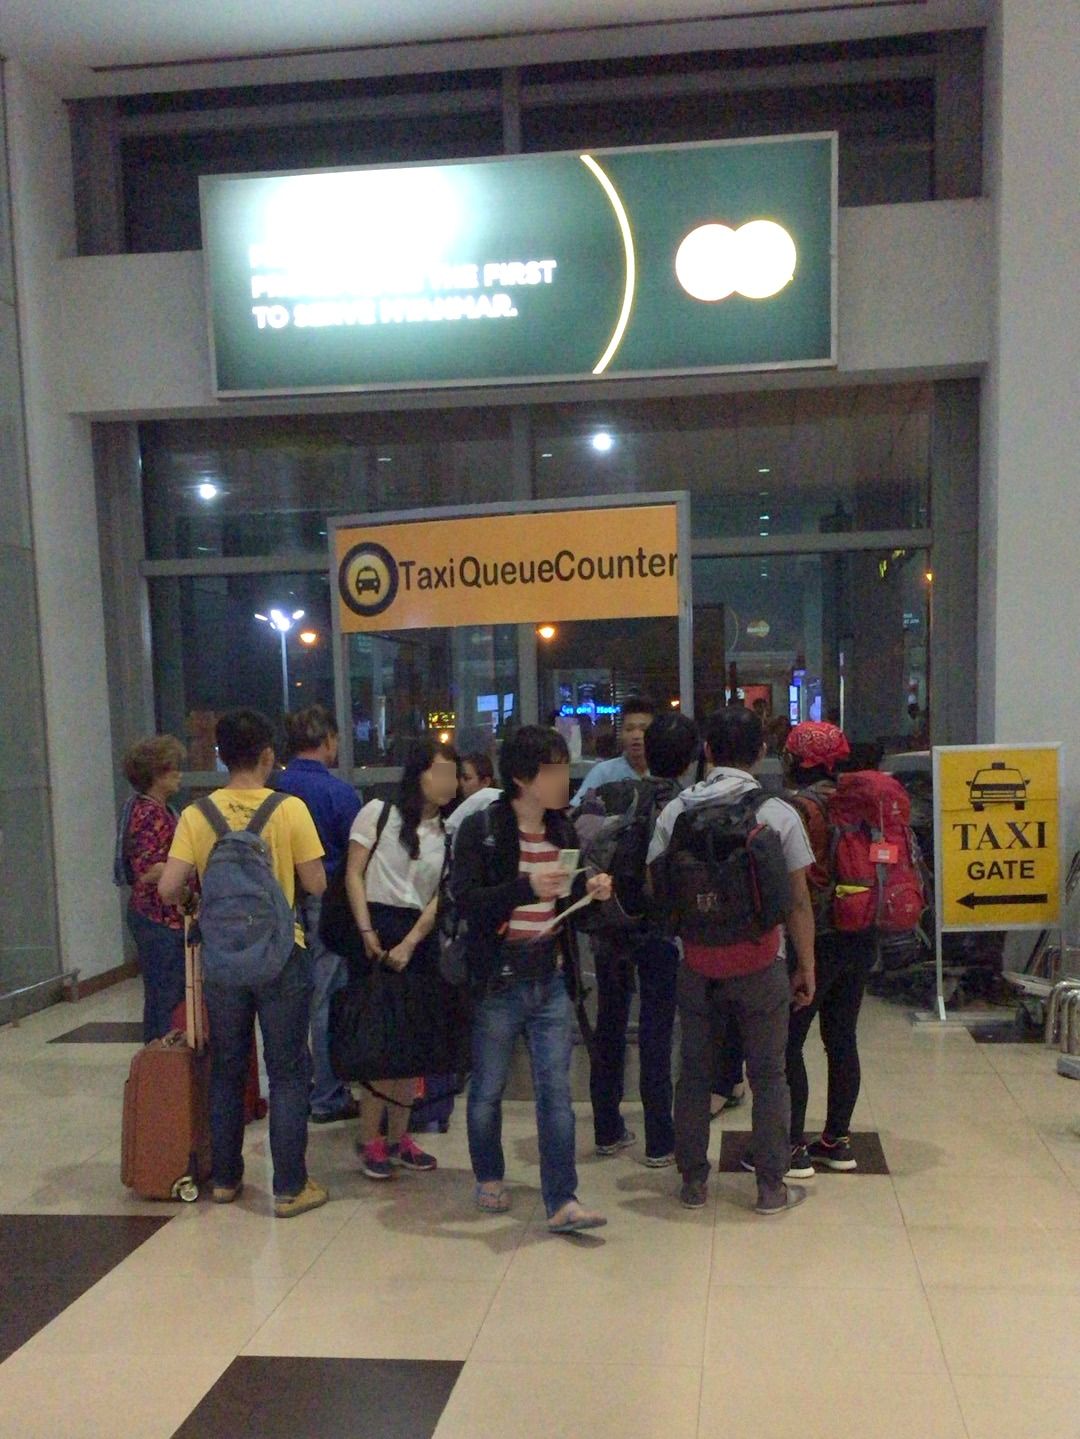 ヤンゴン空港にタクシーカウンターが存在していた